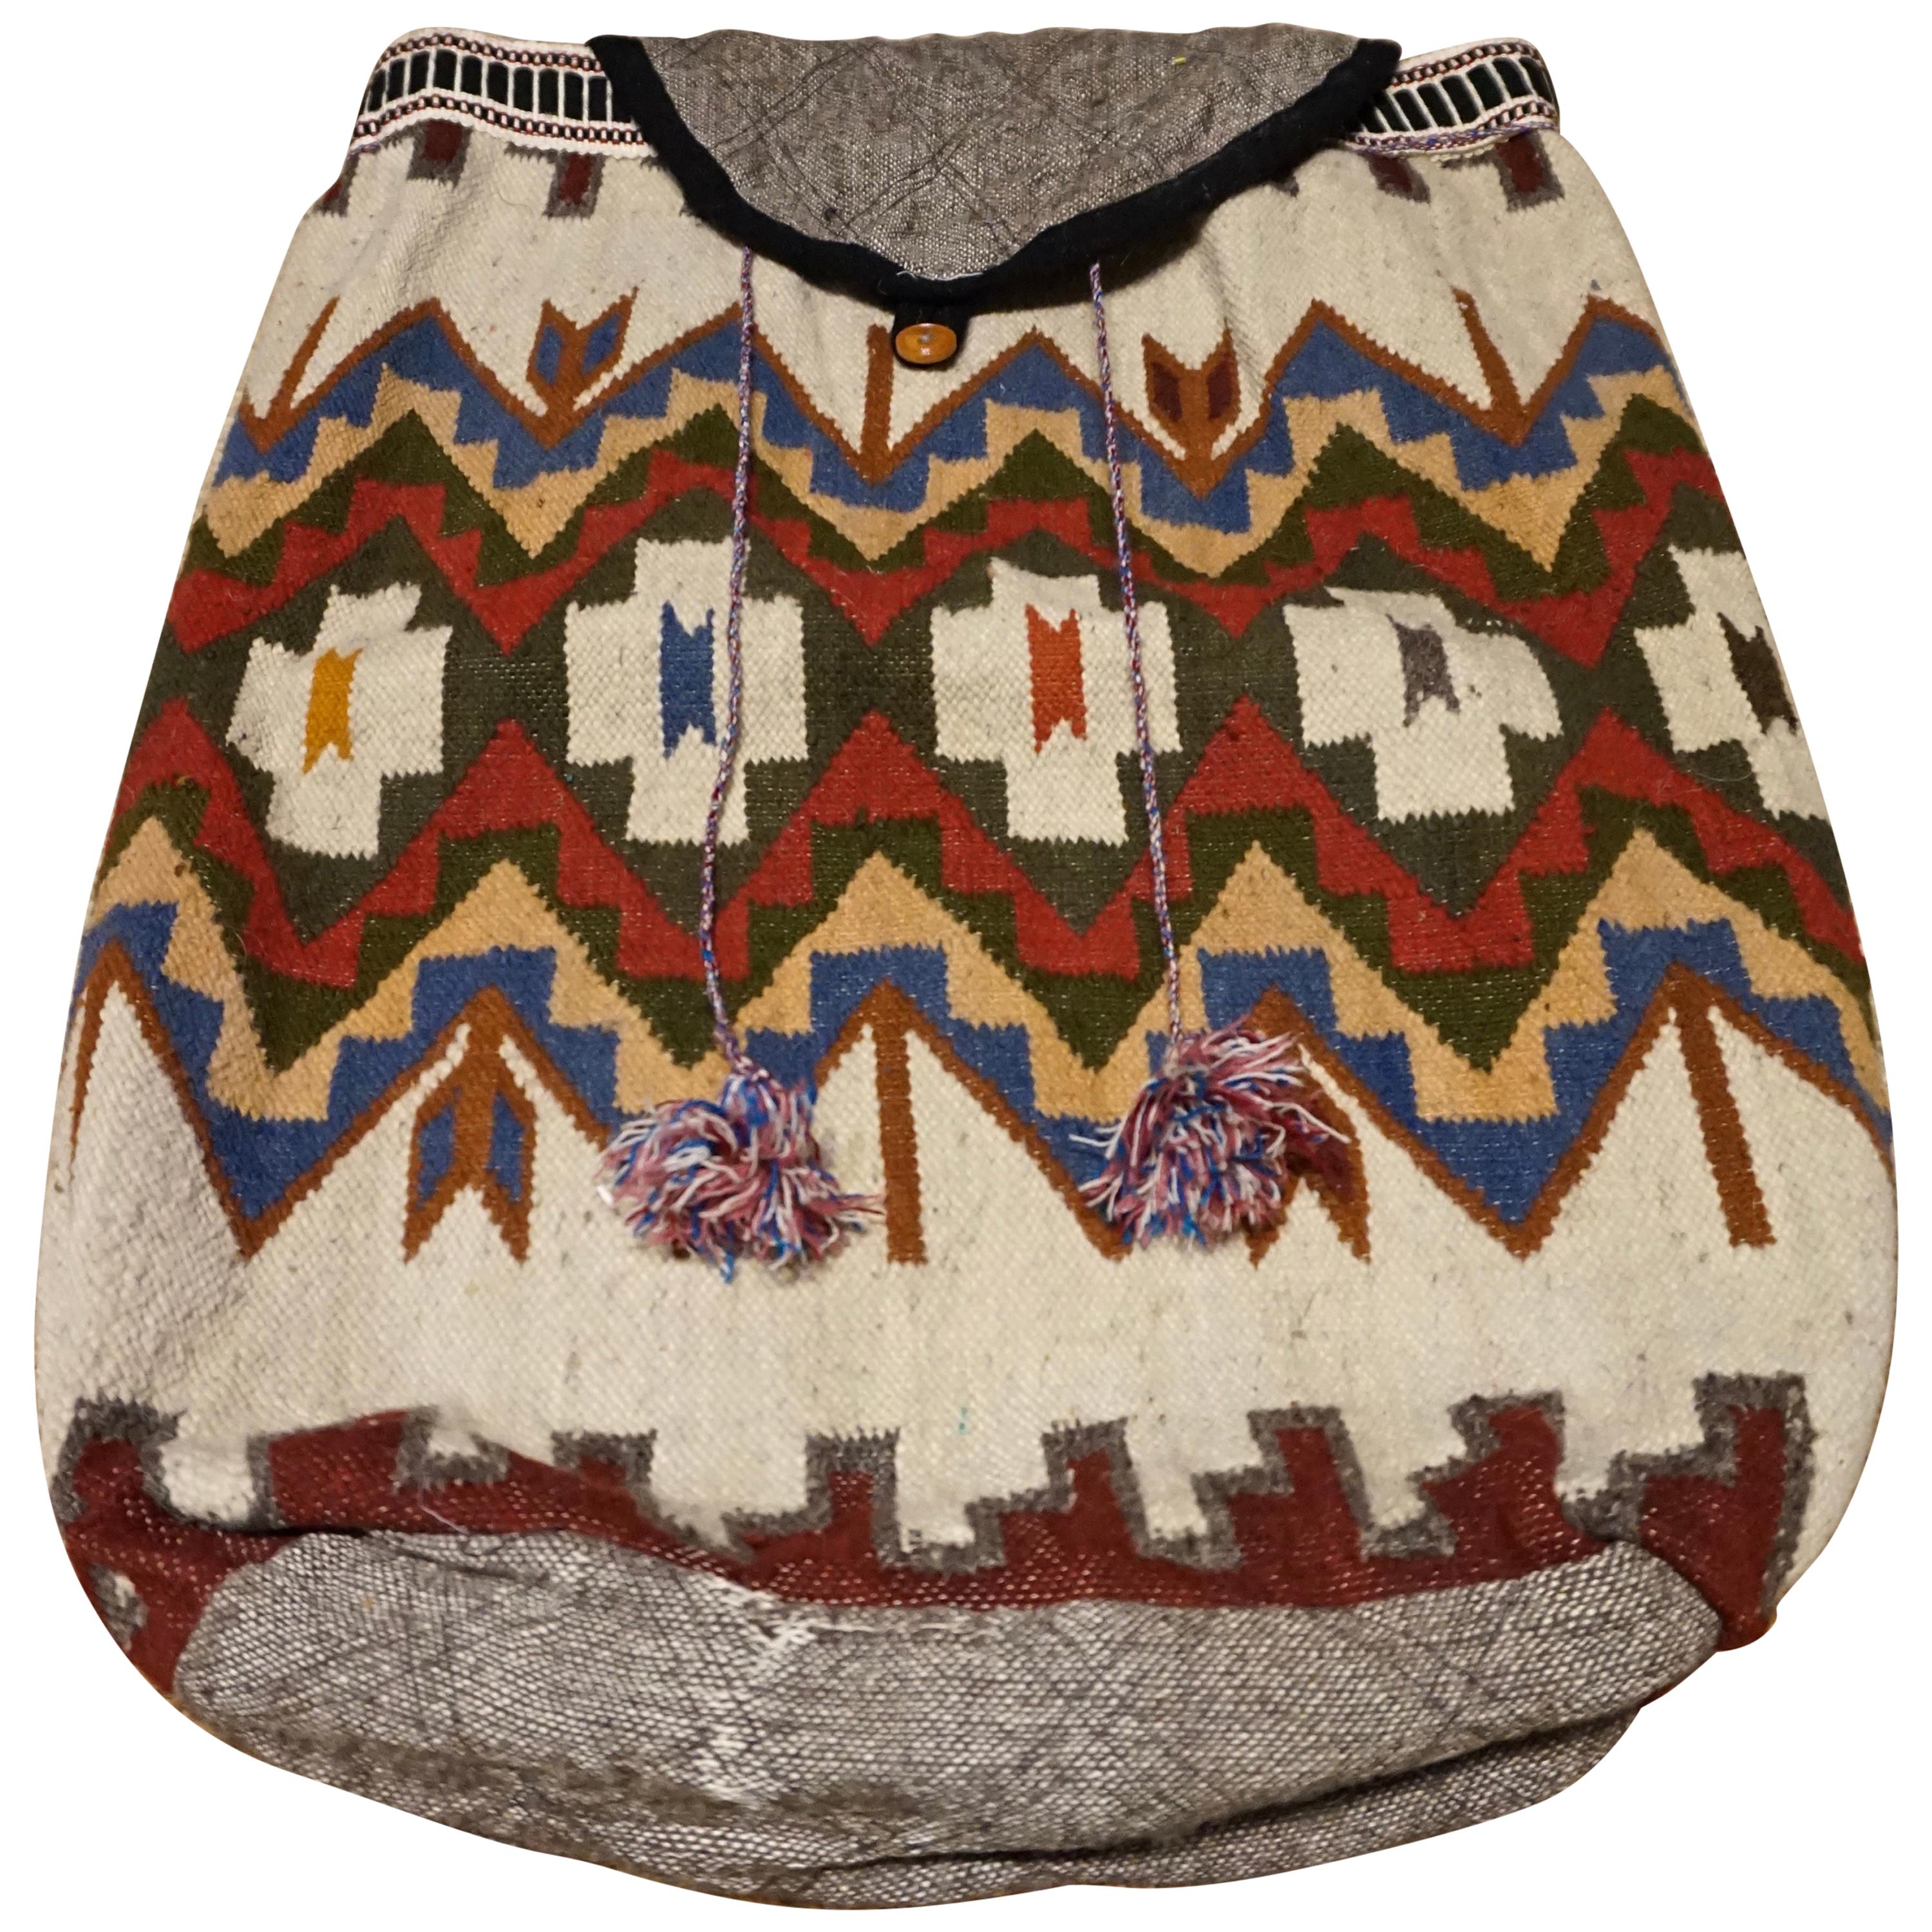 Grand sac à main antique pour bébé en forme de sac à main noué à la main, de style tribal turc Sumak en vente